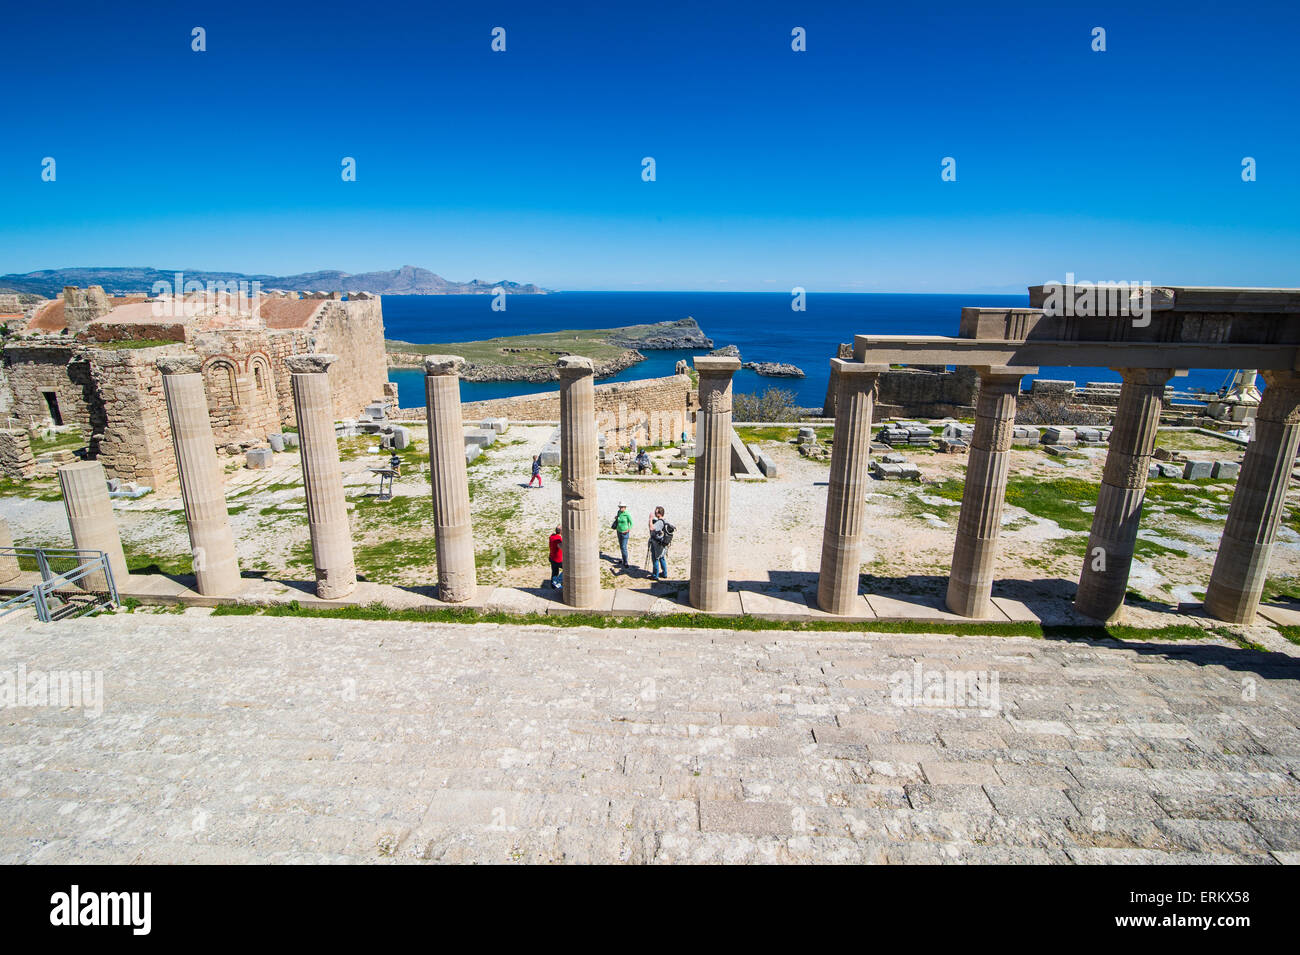 Acropole de Lindos, Rhodes, Dodécanèse, îles grecques, Grèce, Europe Banque D'Images